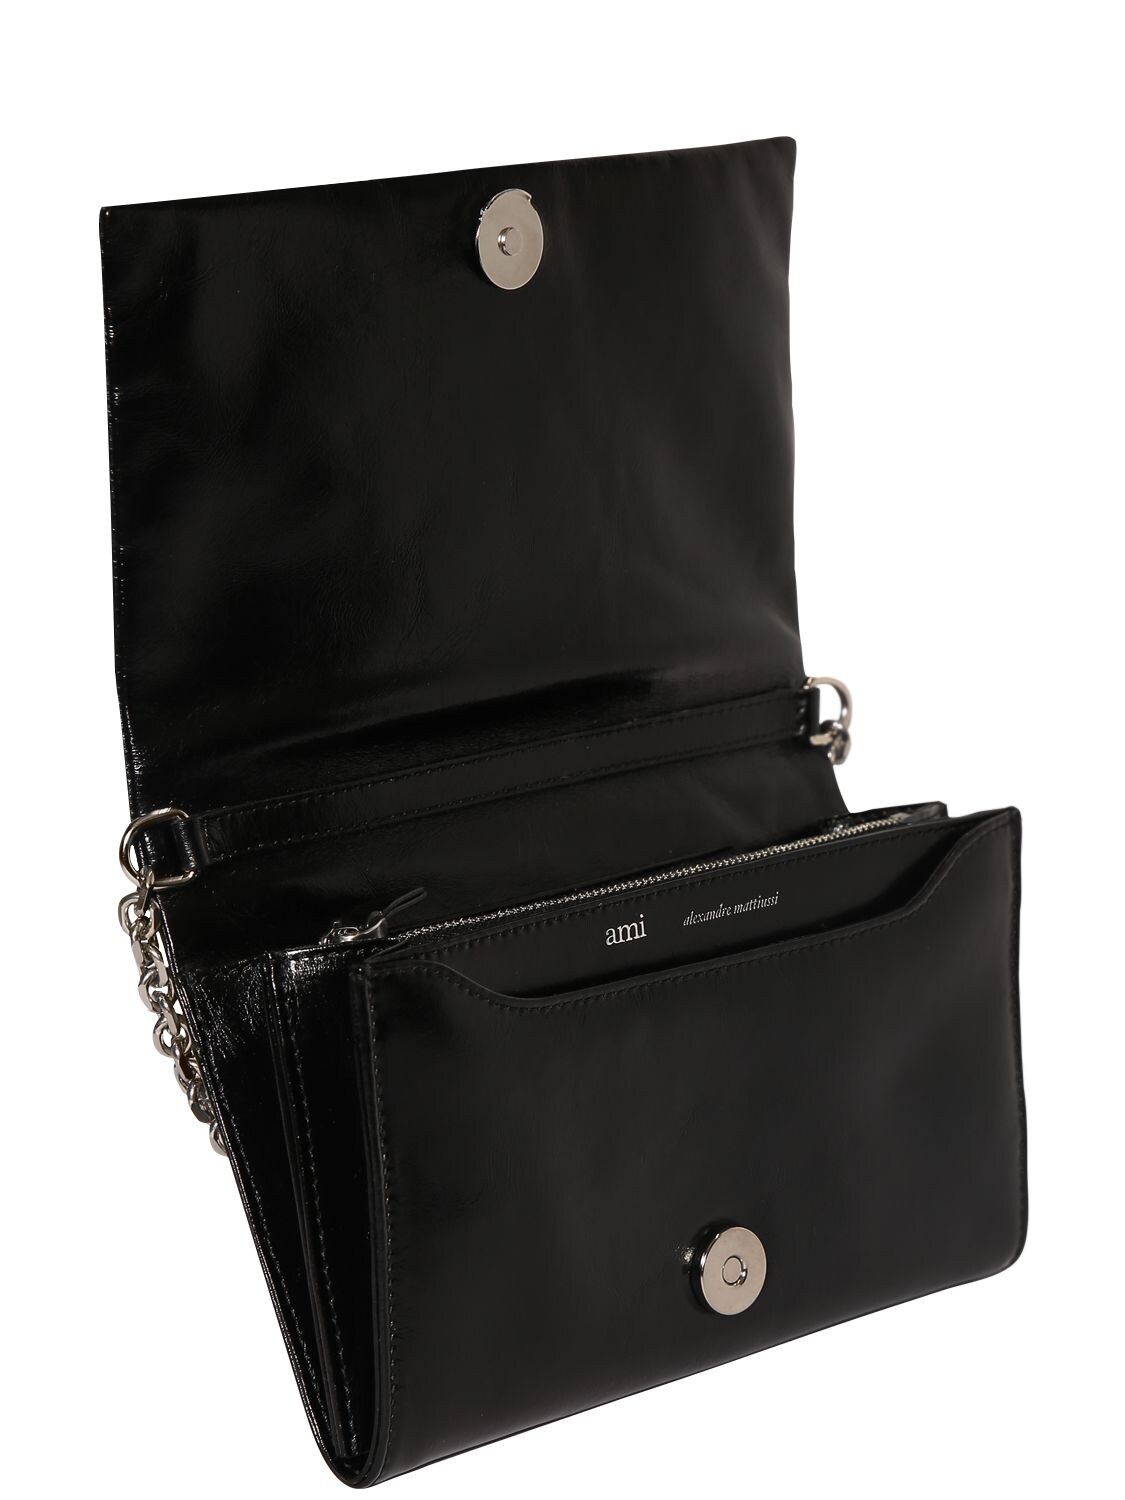 Shop Ami Alexandre Mattiussi Voulez Vous Leather Wallet W/ Chain In Black